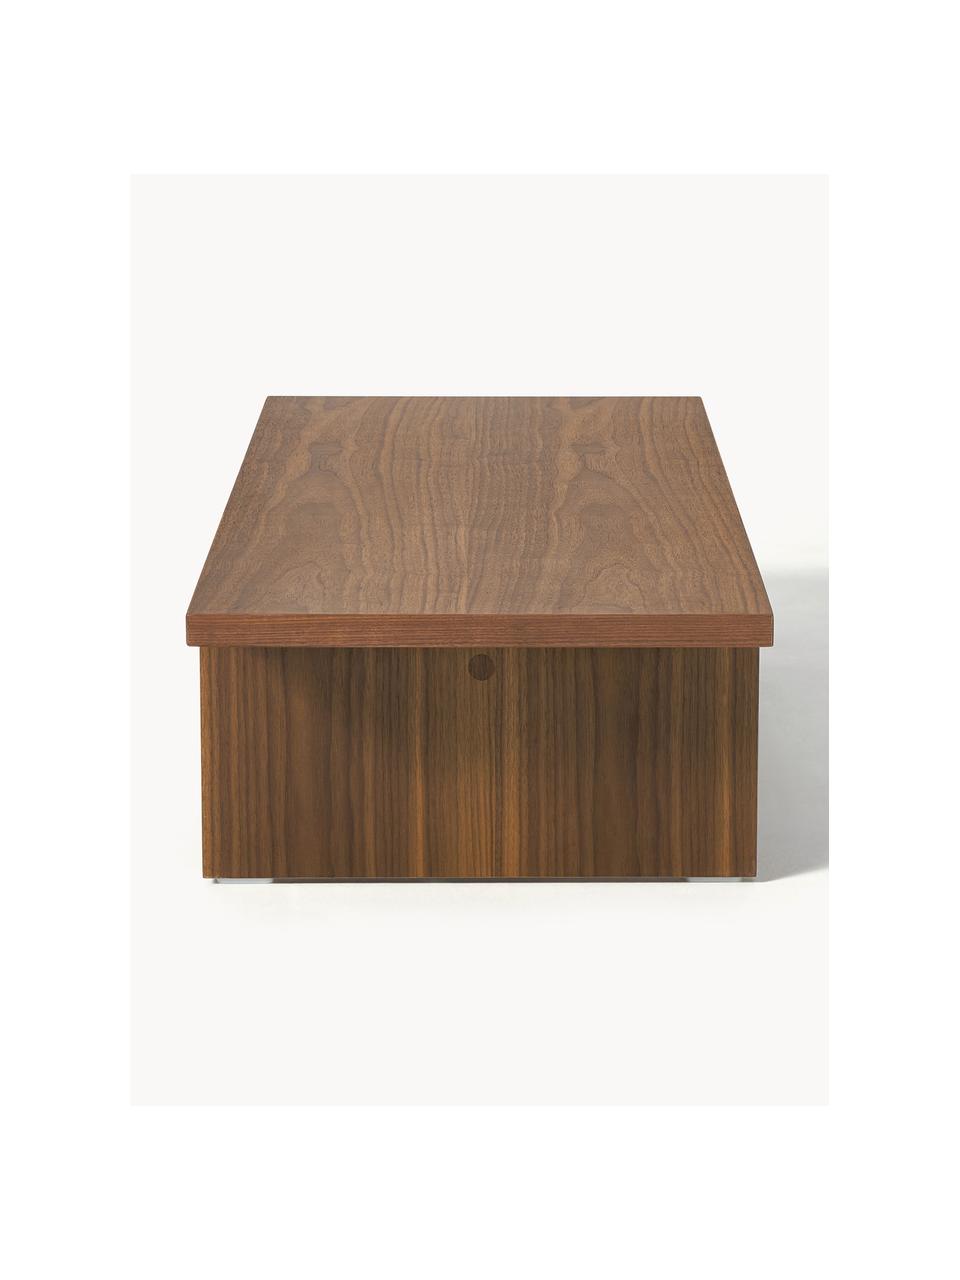 Nízký dřevěný konferenční stolek Toni, Dřevovláknitá deska střední hustoty (MDF) s lakovaná dýha z ořechového dřeva

Tento produkt je vyroben z udržitelných zdrojů dřeva s certifikací FSC®., Ořechové dřevo, Š 120 cm, V 25 cm